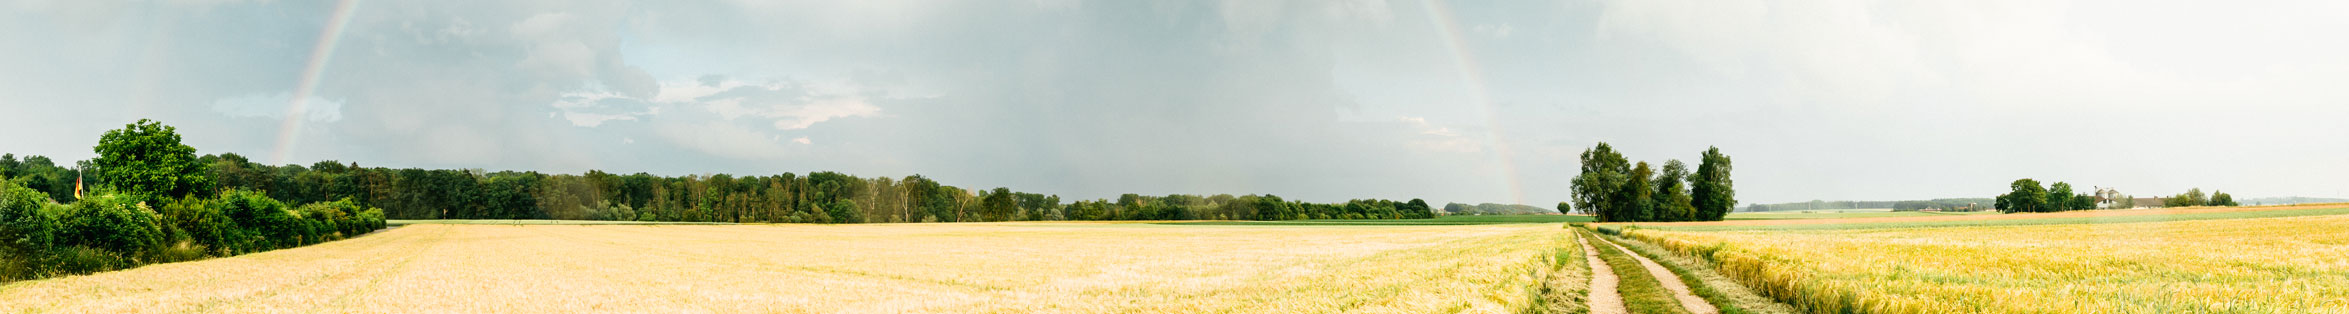 Wheat field and rainbow. #2881 regionale-fotobank.de